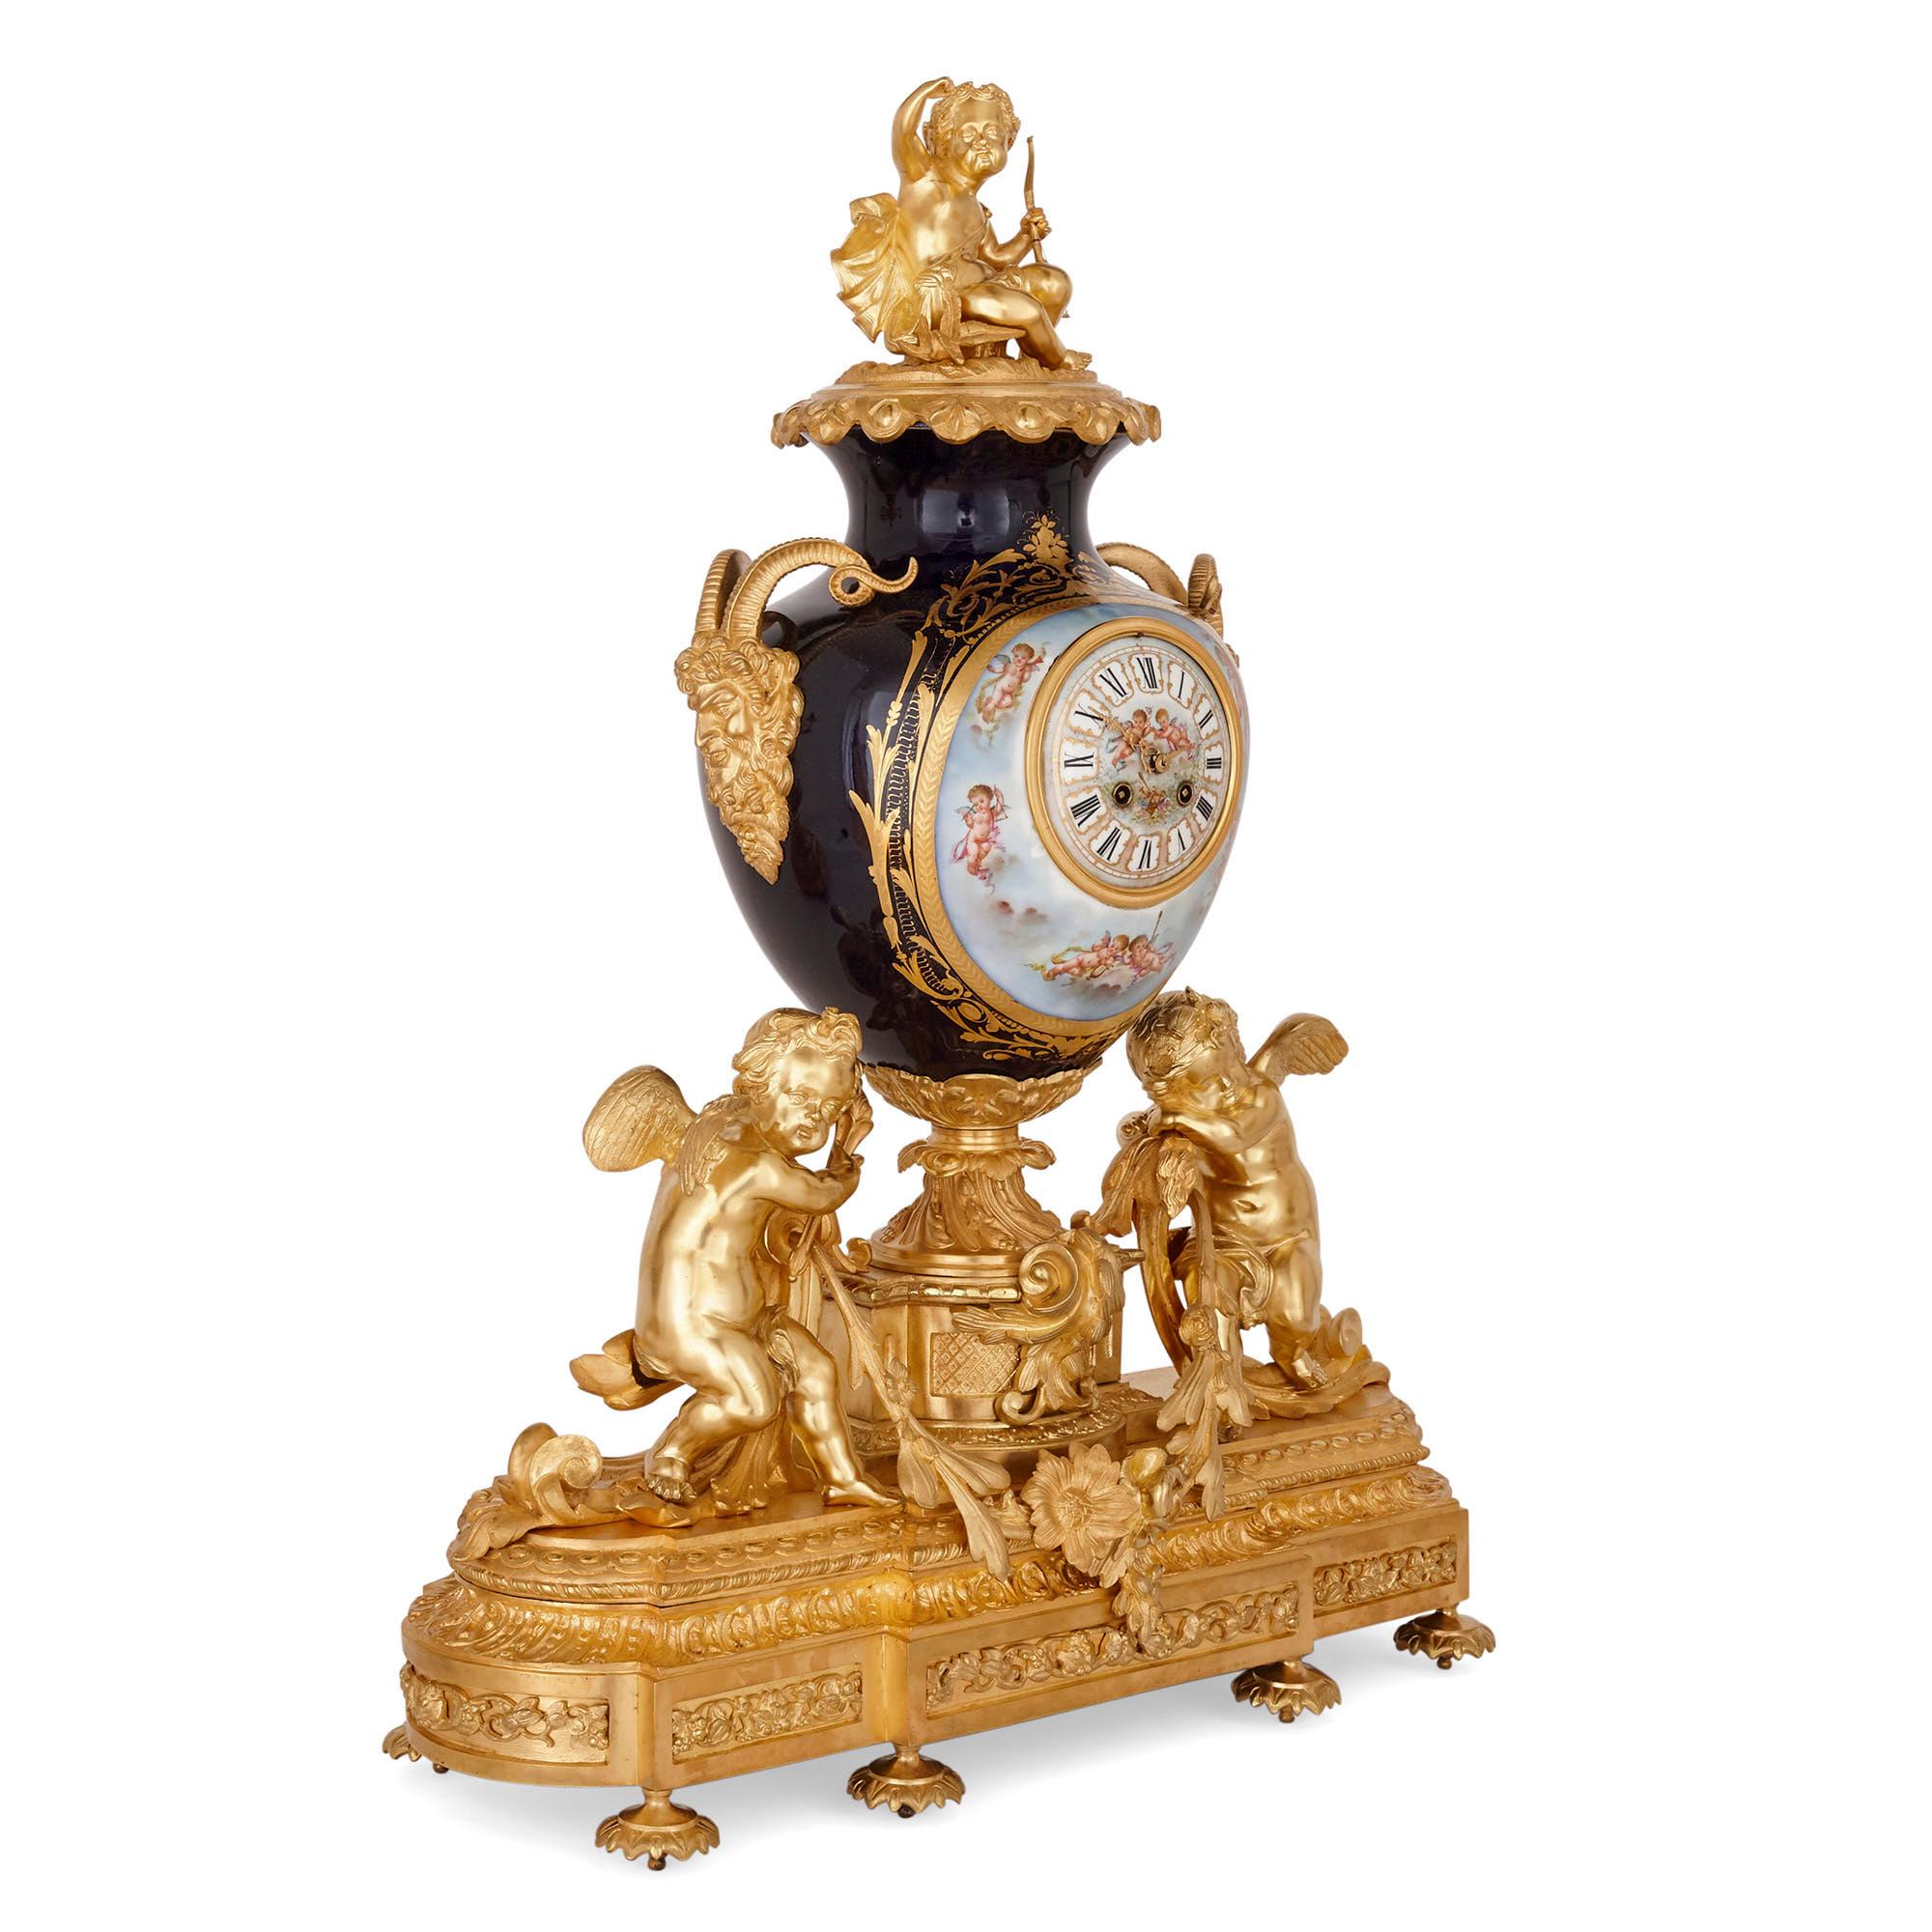 Dreiteiliges Porzellan- und Ormolu-Uhrenset im Louis XV-Rokokostil
Französisch, Ende 19. Jahrhundert
Uhr: Höhe 82cm, Breite 62, Tiefe 28cm
Kandelaber: Höhe 76cm, Durchmesser 22cm

Dieses dreiteilige Uhrenset, bestehend aus einer Kaminuhr und